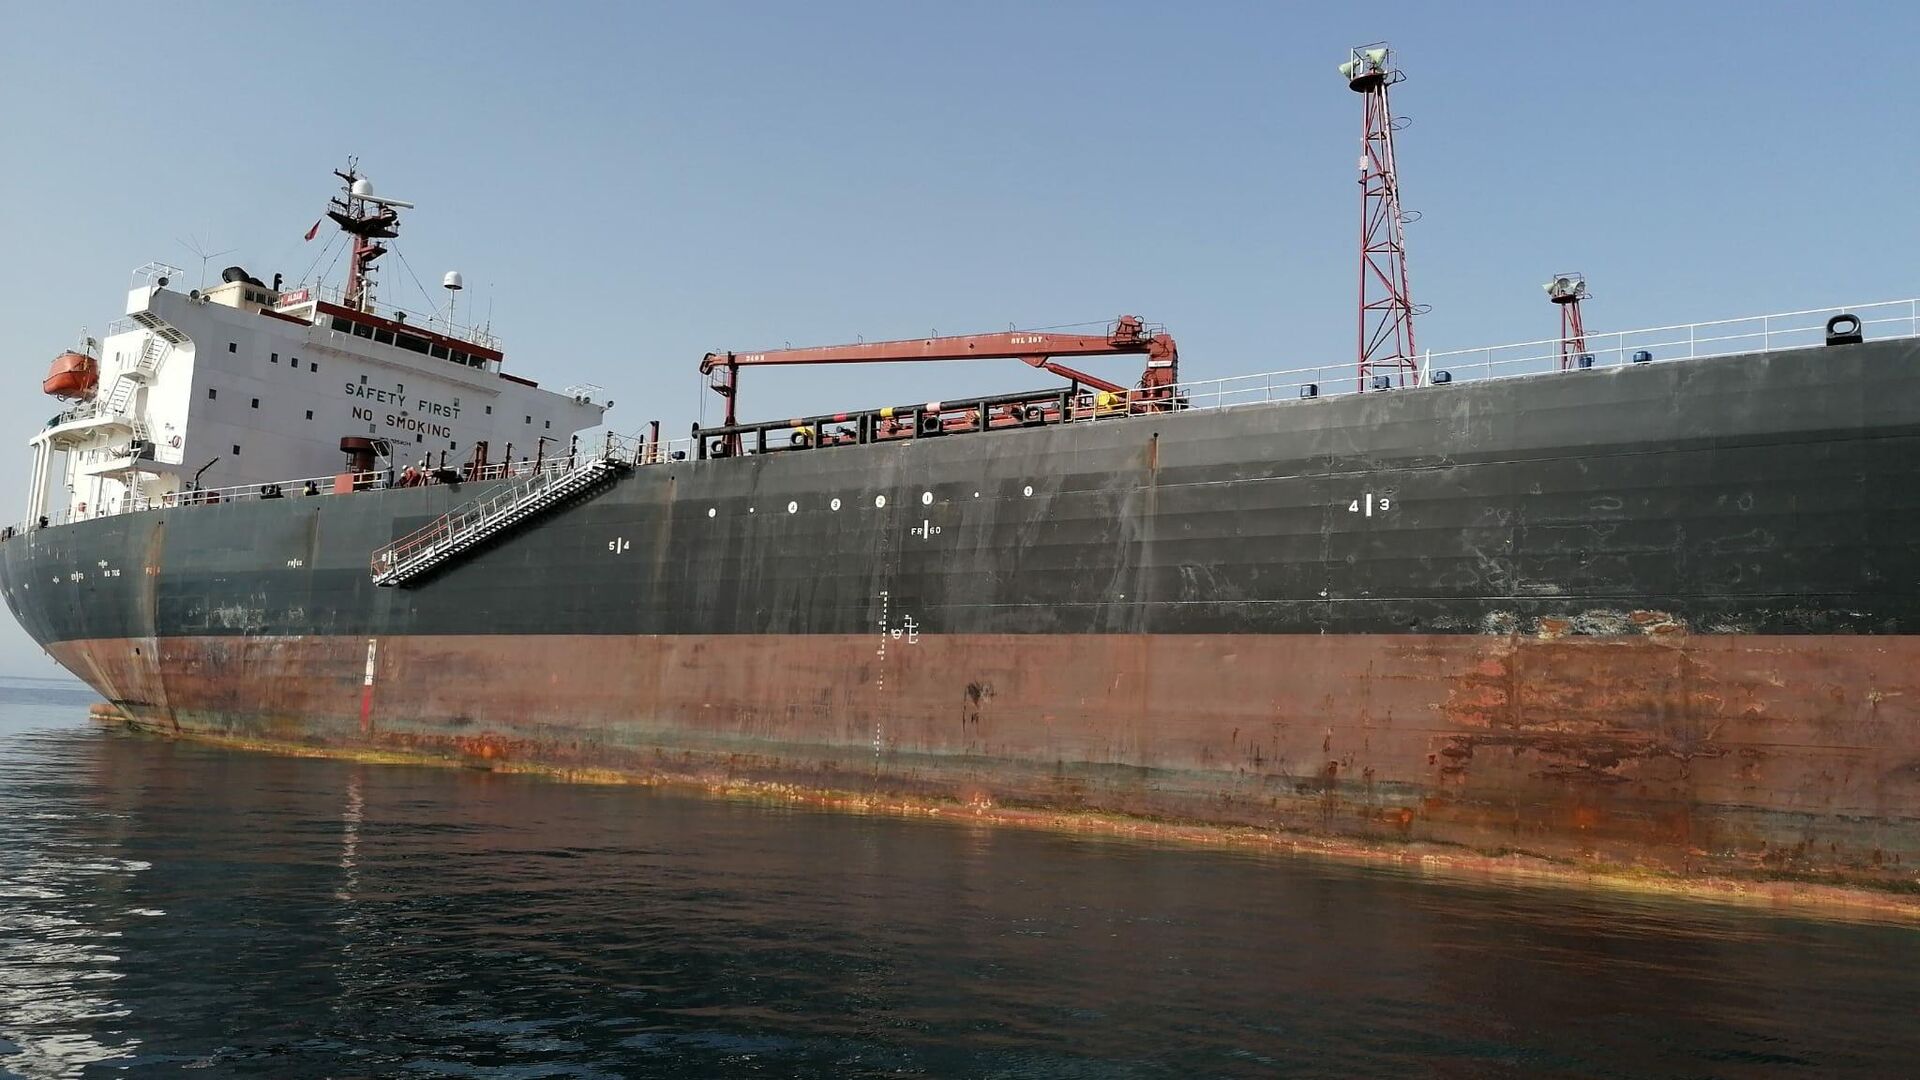 El petróleo Aldan fue construido en 2003 y navega bajo bandera de Liberia - Sputnik Mundo, 1920, 16.06.2021